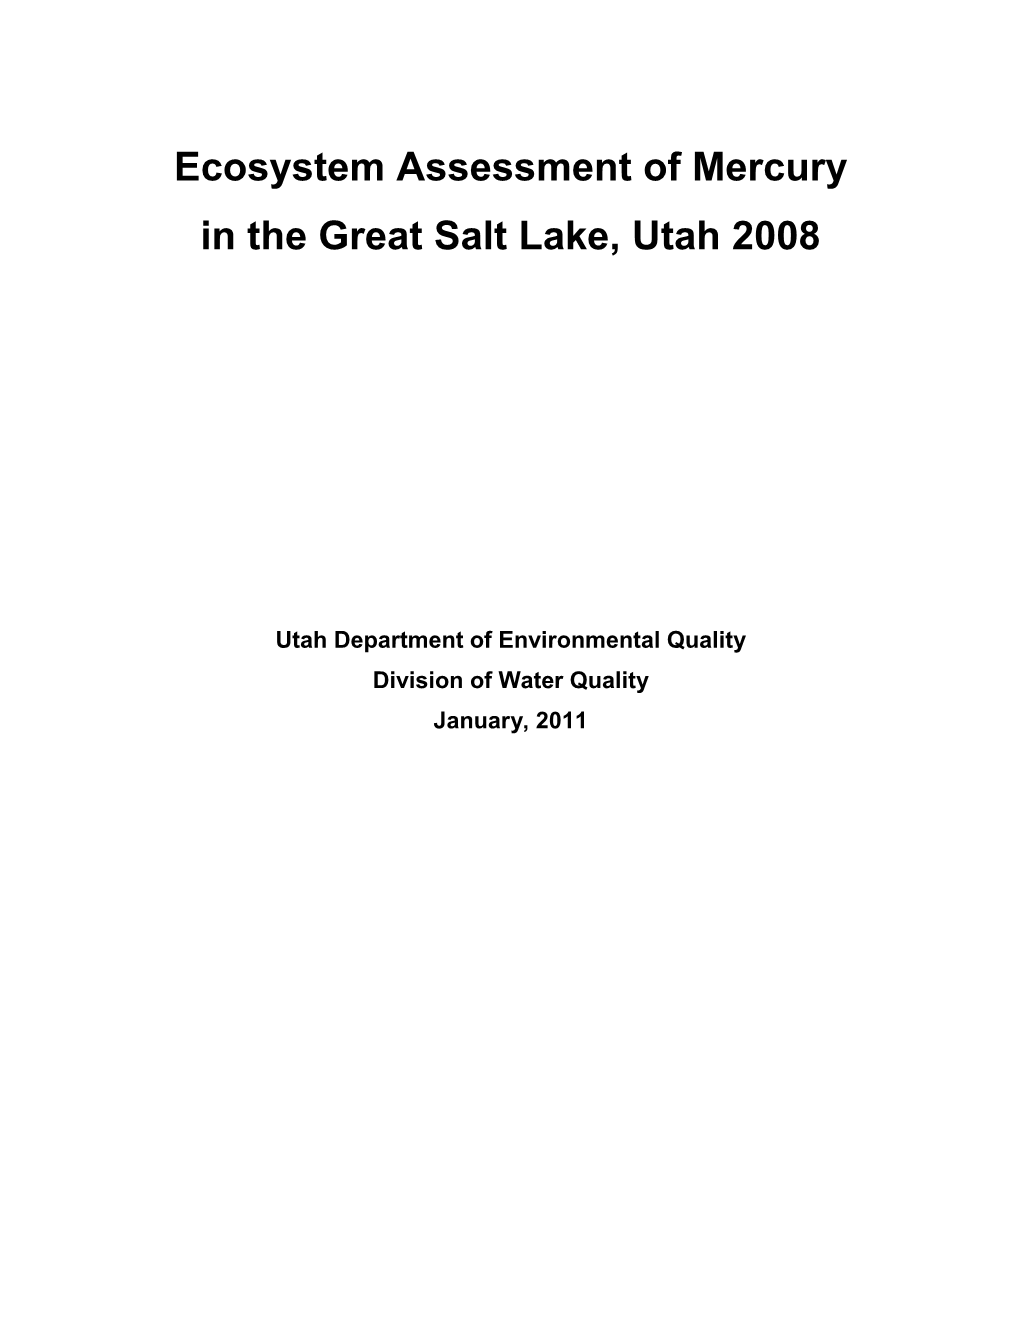 Ecosystem Assessment of Mercury in the Great Salt Lake, Utah 2008